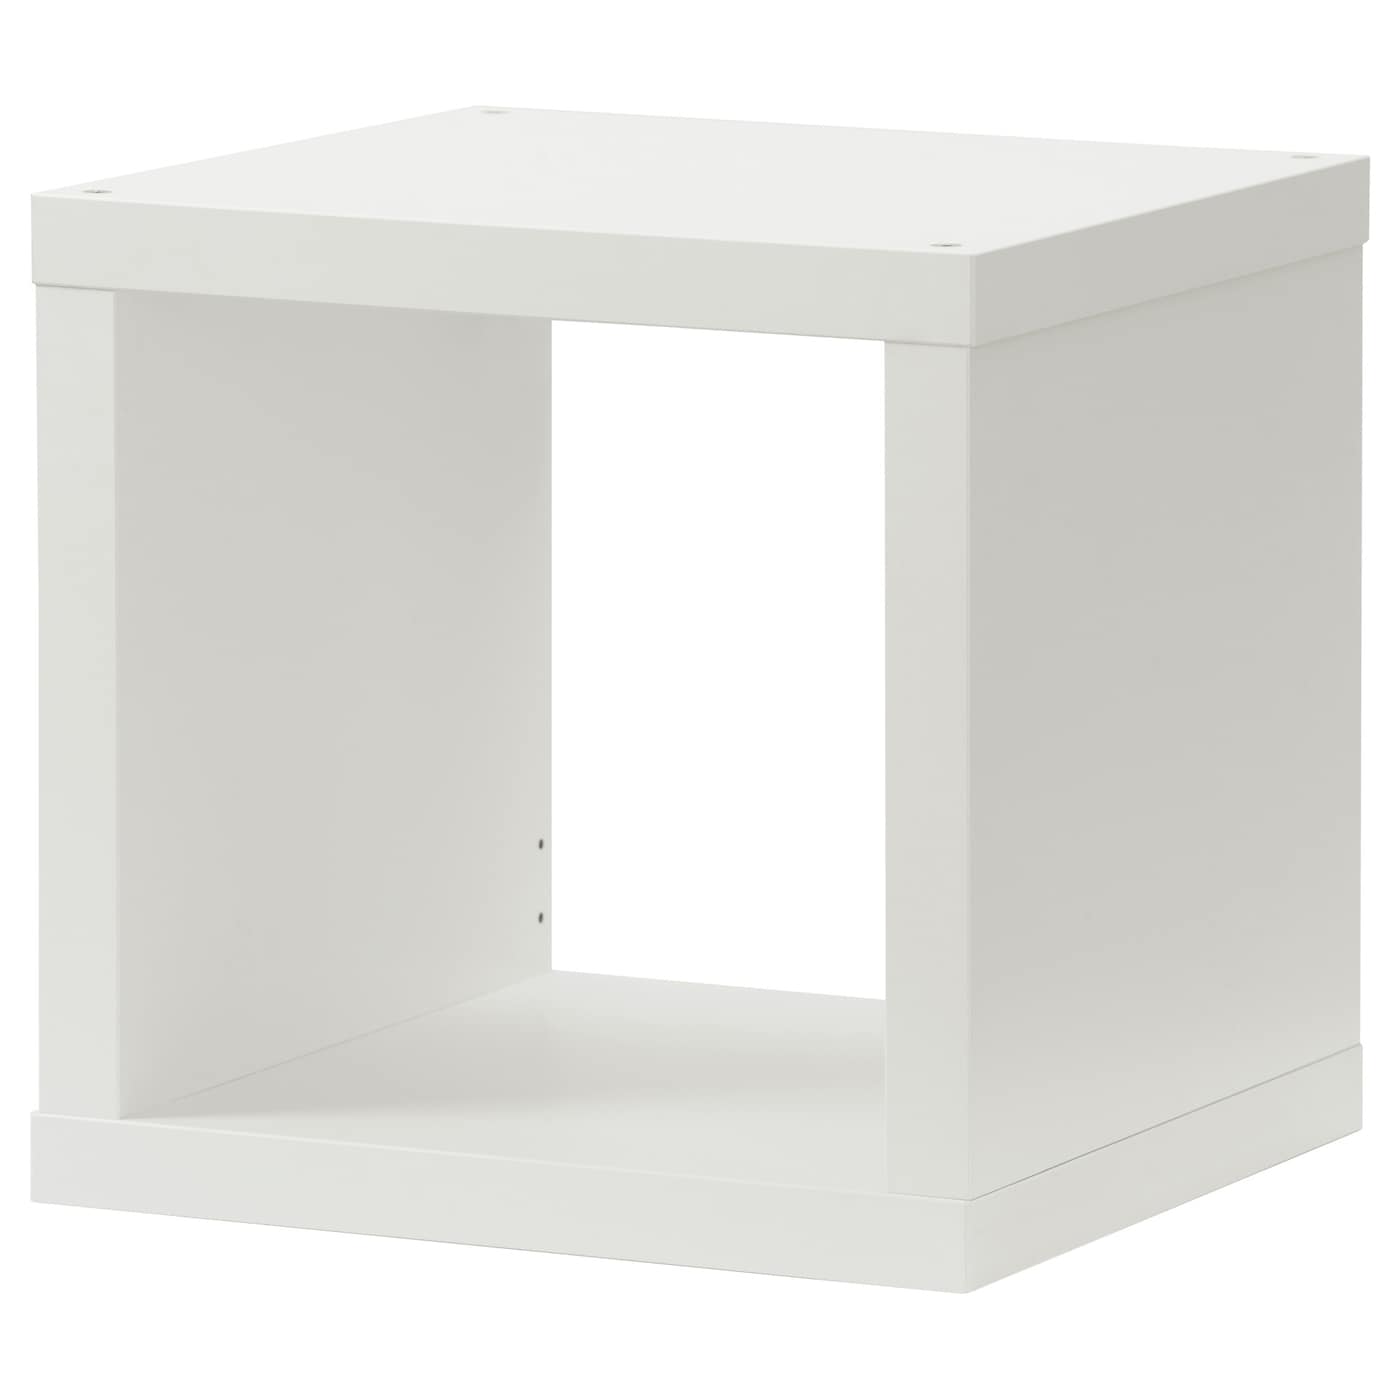 Стеллаж 1 ячейка - IKEA KALLAX, 42х41 см, белый, КАЛЛАКС ИКЕА